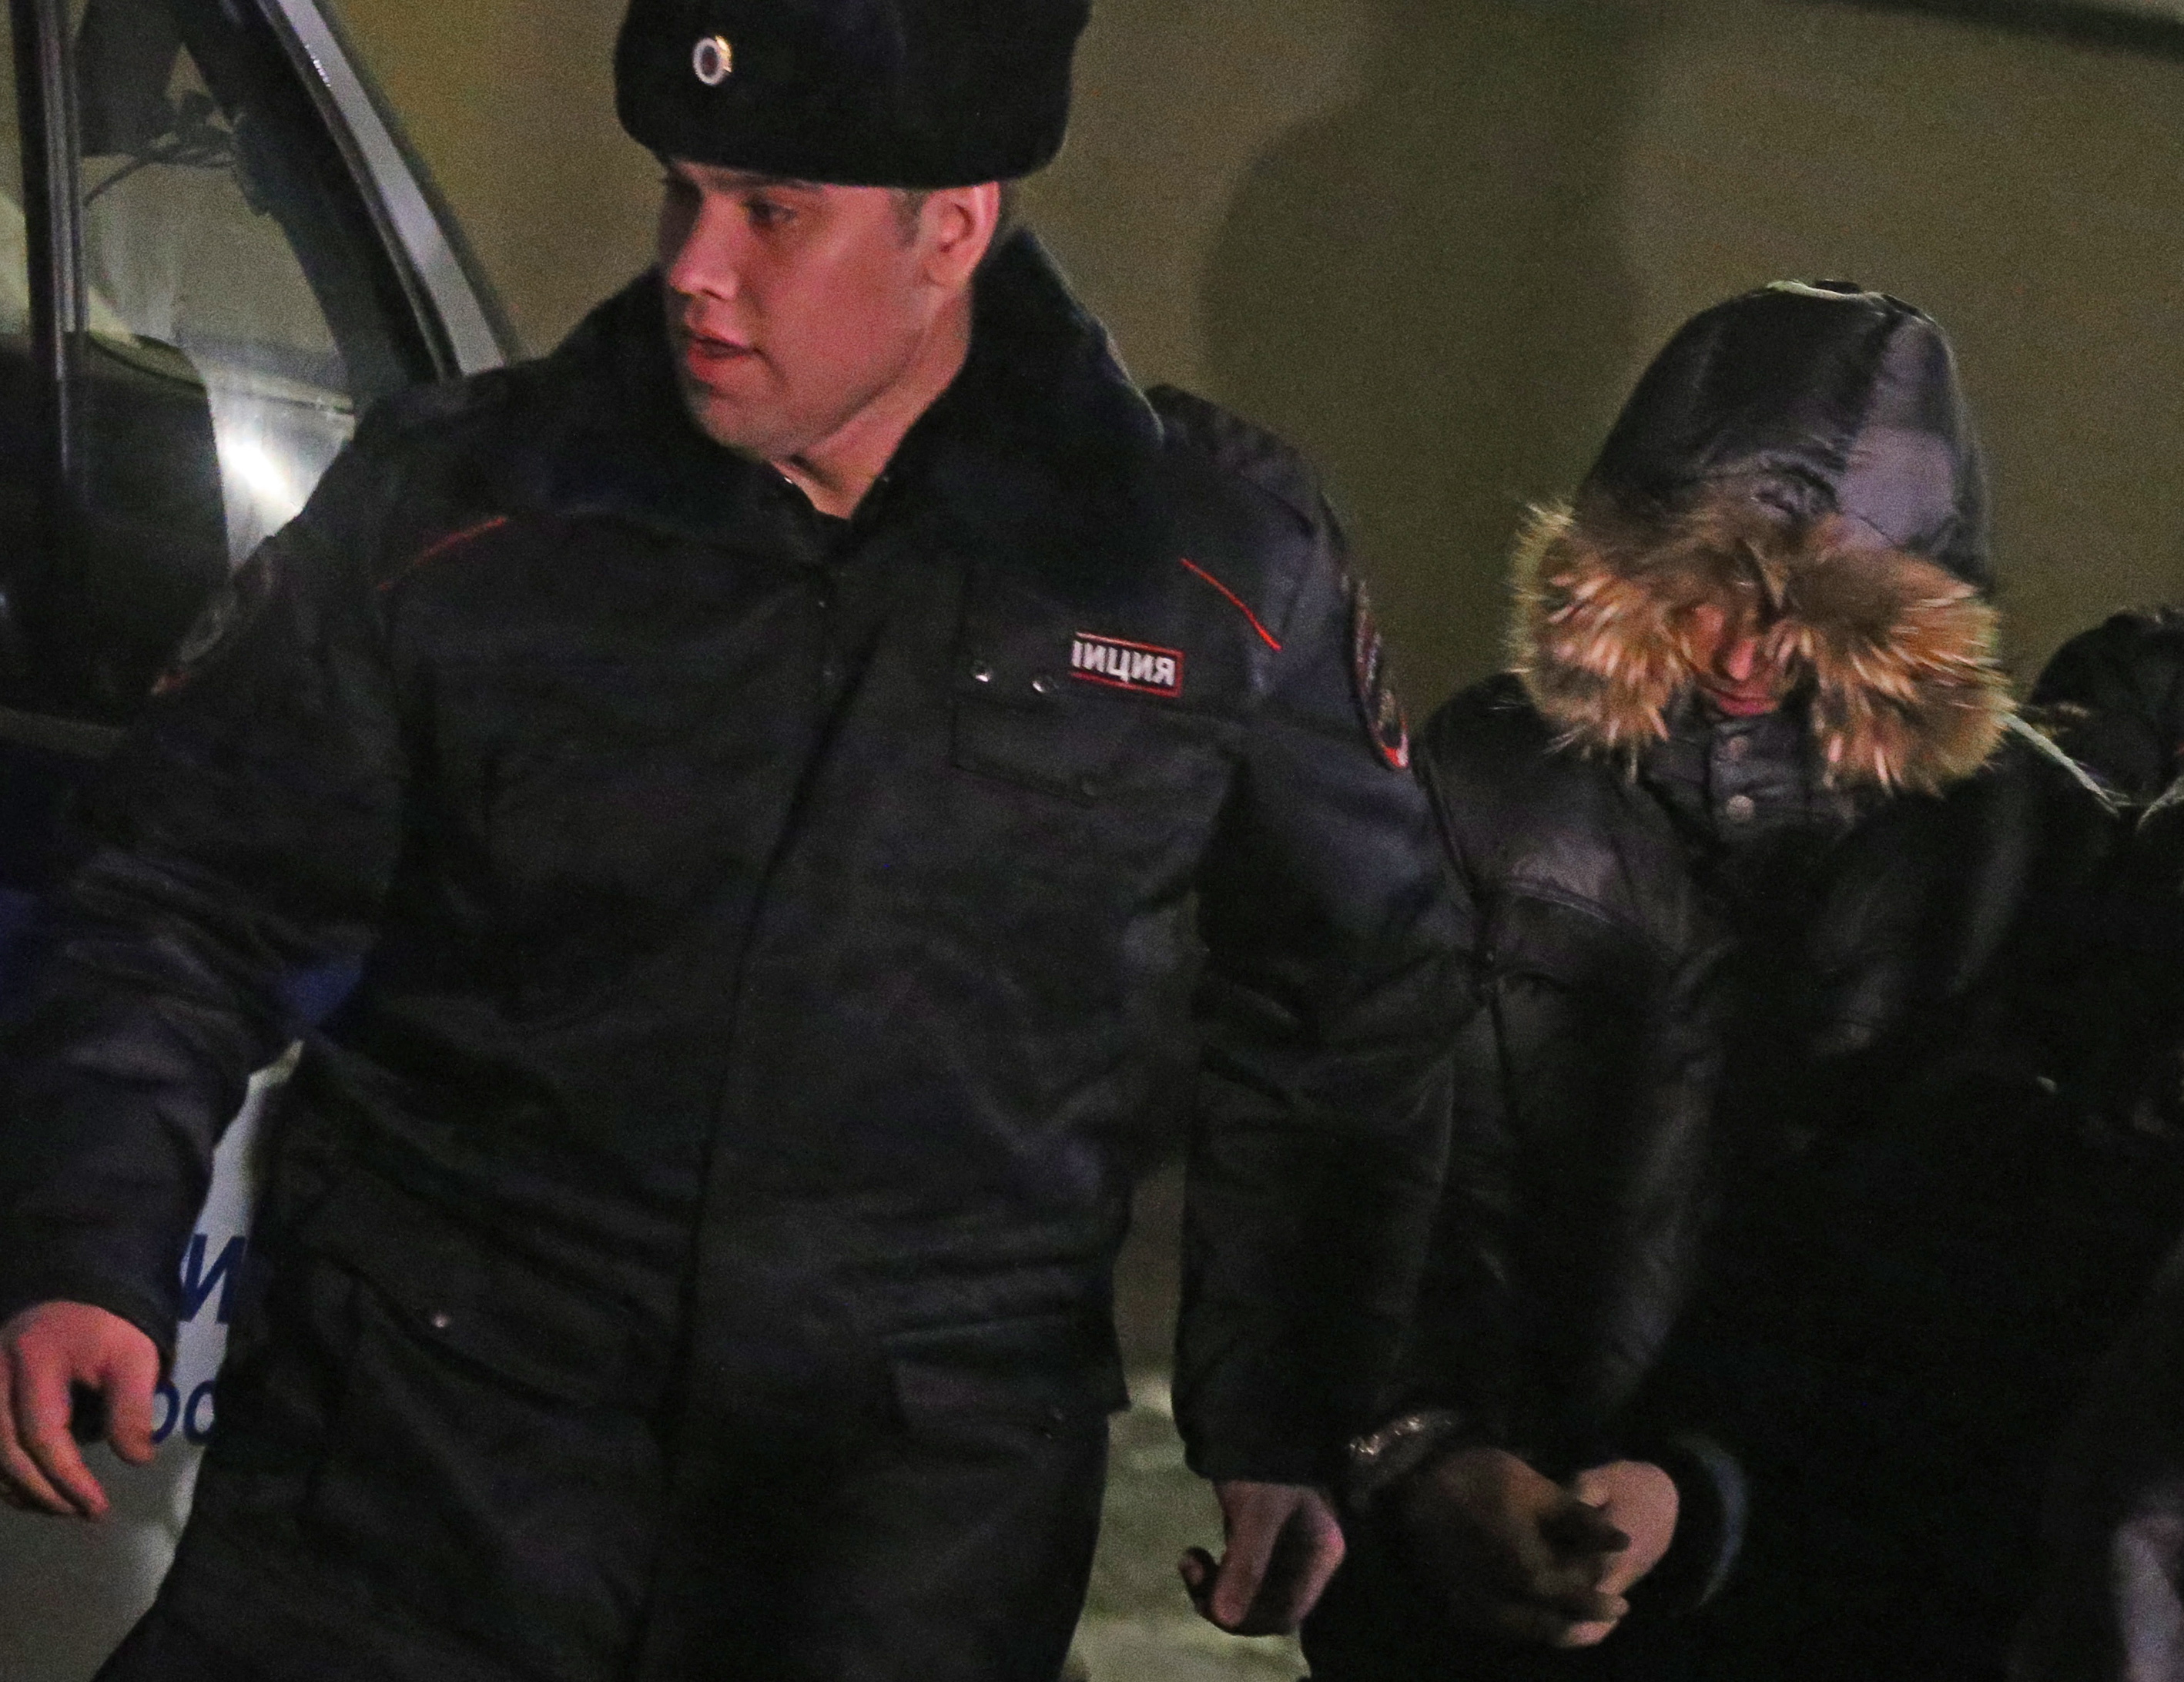 Сергей Гордеев говорил, что планировал покончить с собой, но в конце концов отец уговорил его сдаться полиции. На следующий день суд отправил его под арест